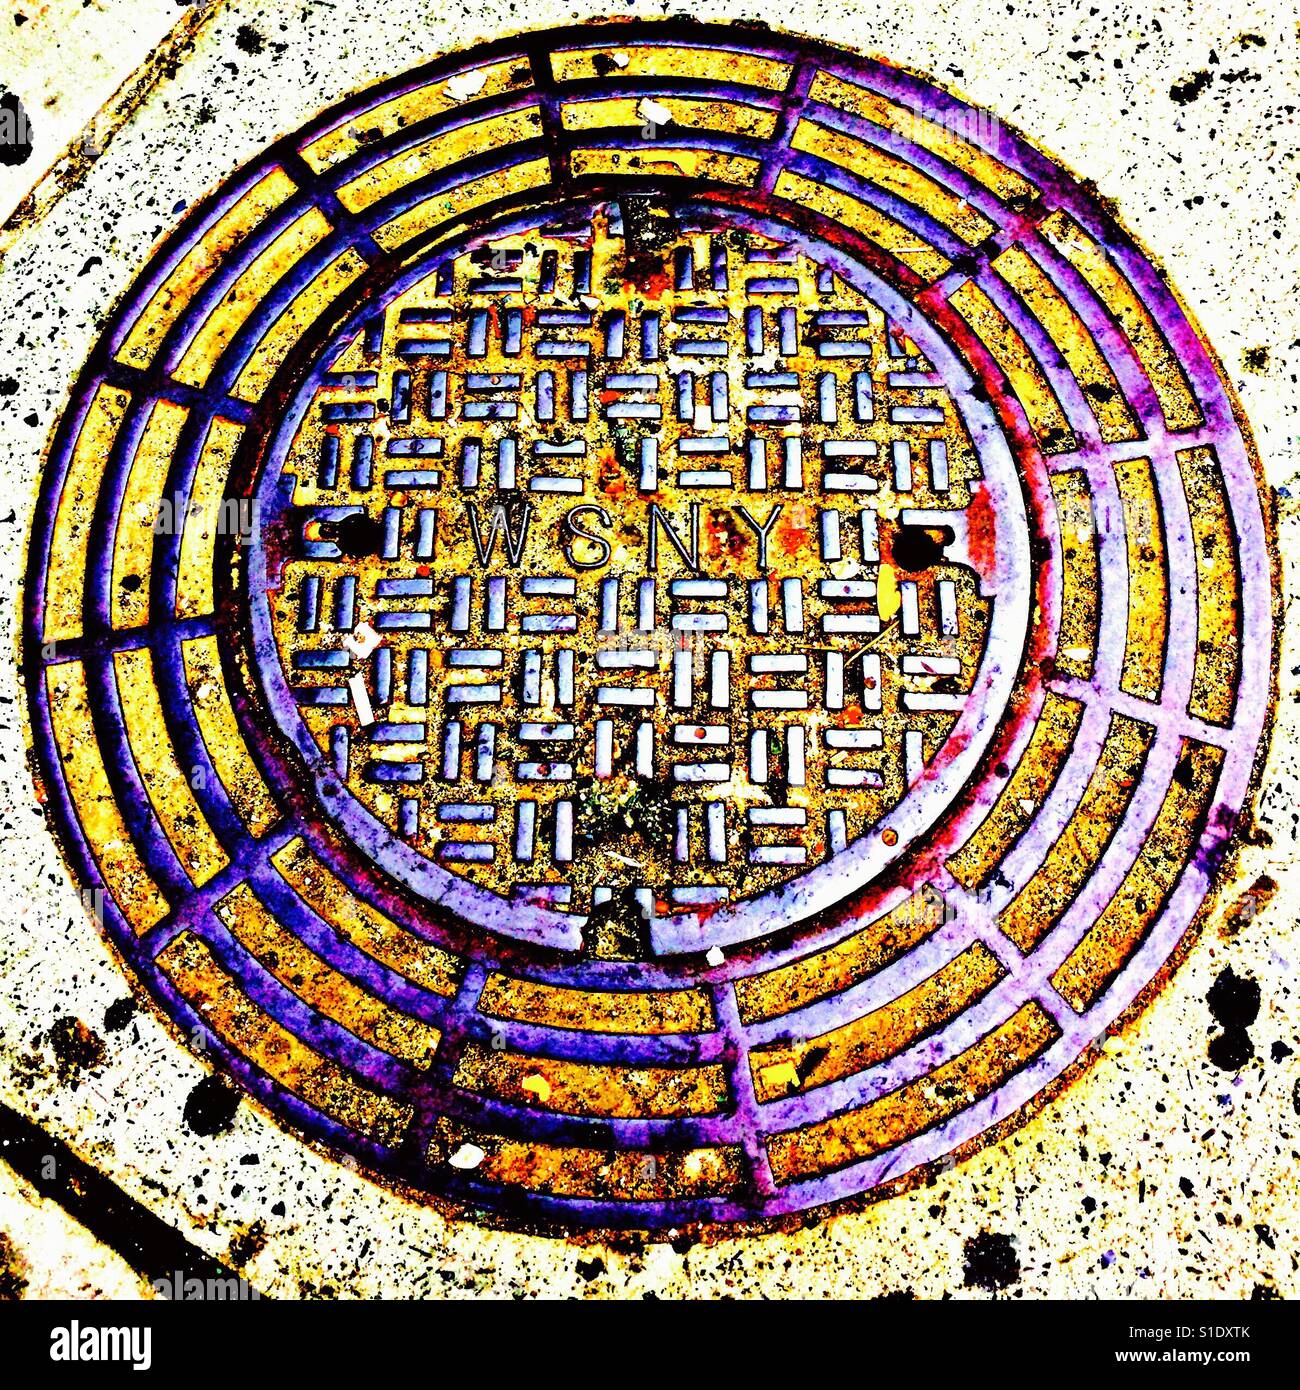 Tapa de registro, 5 círculos concéntricos, 12 líneas perpendiculares conectando círculos, alternando con plazas llenas de Centro, que consta de 2 líneas cada uno, plazas dispuestas en un ángulo de 90 grados,WSNY Center, Nueva York Foto de stock